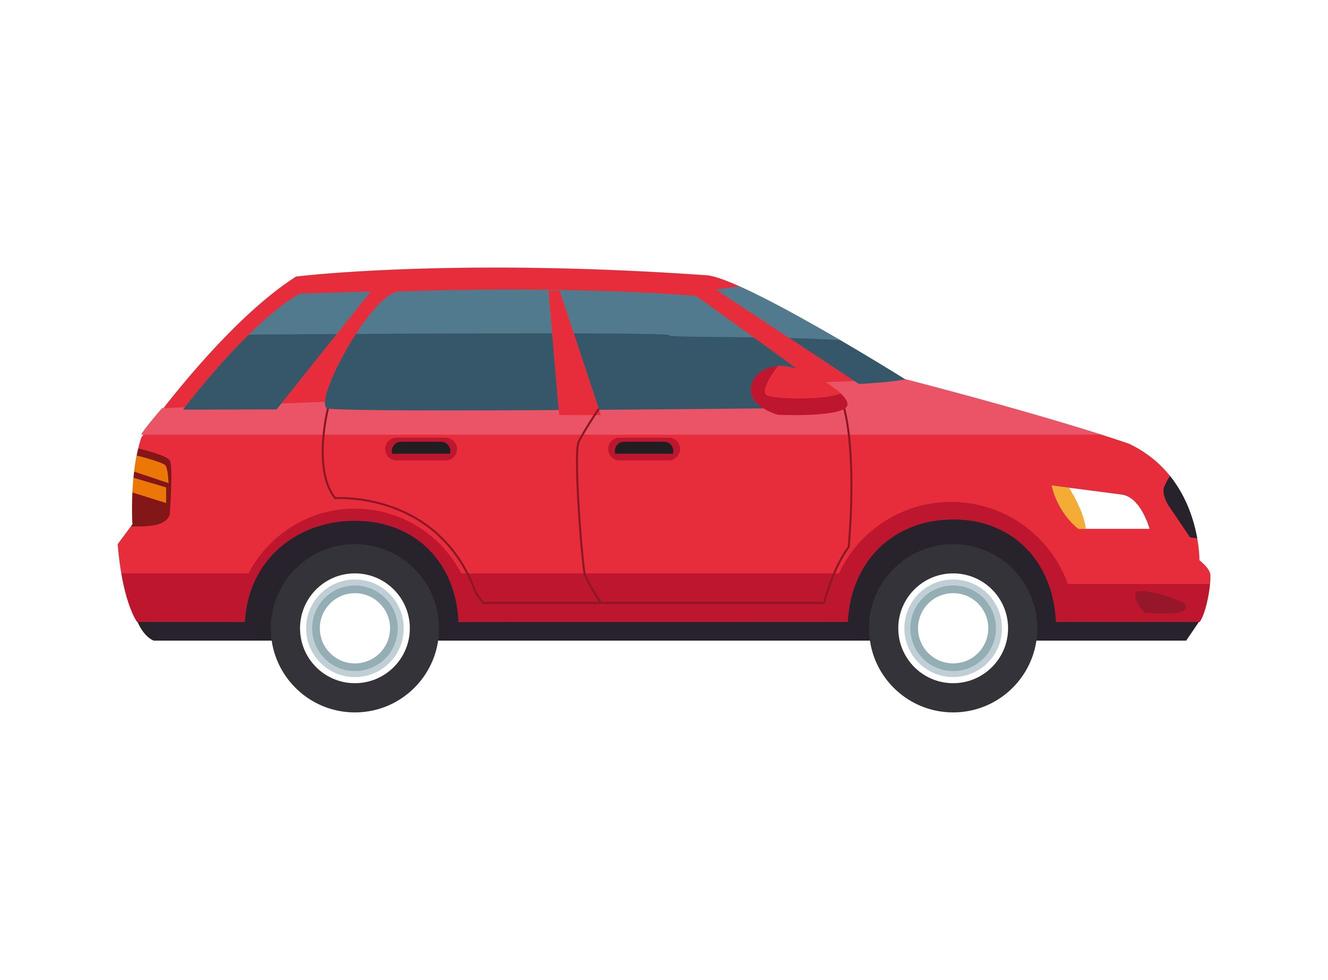 Auto Véhicule Voiture Rouge - Images vectorielles gratuites sur